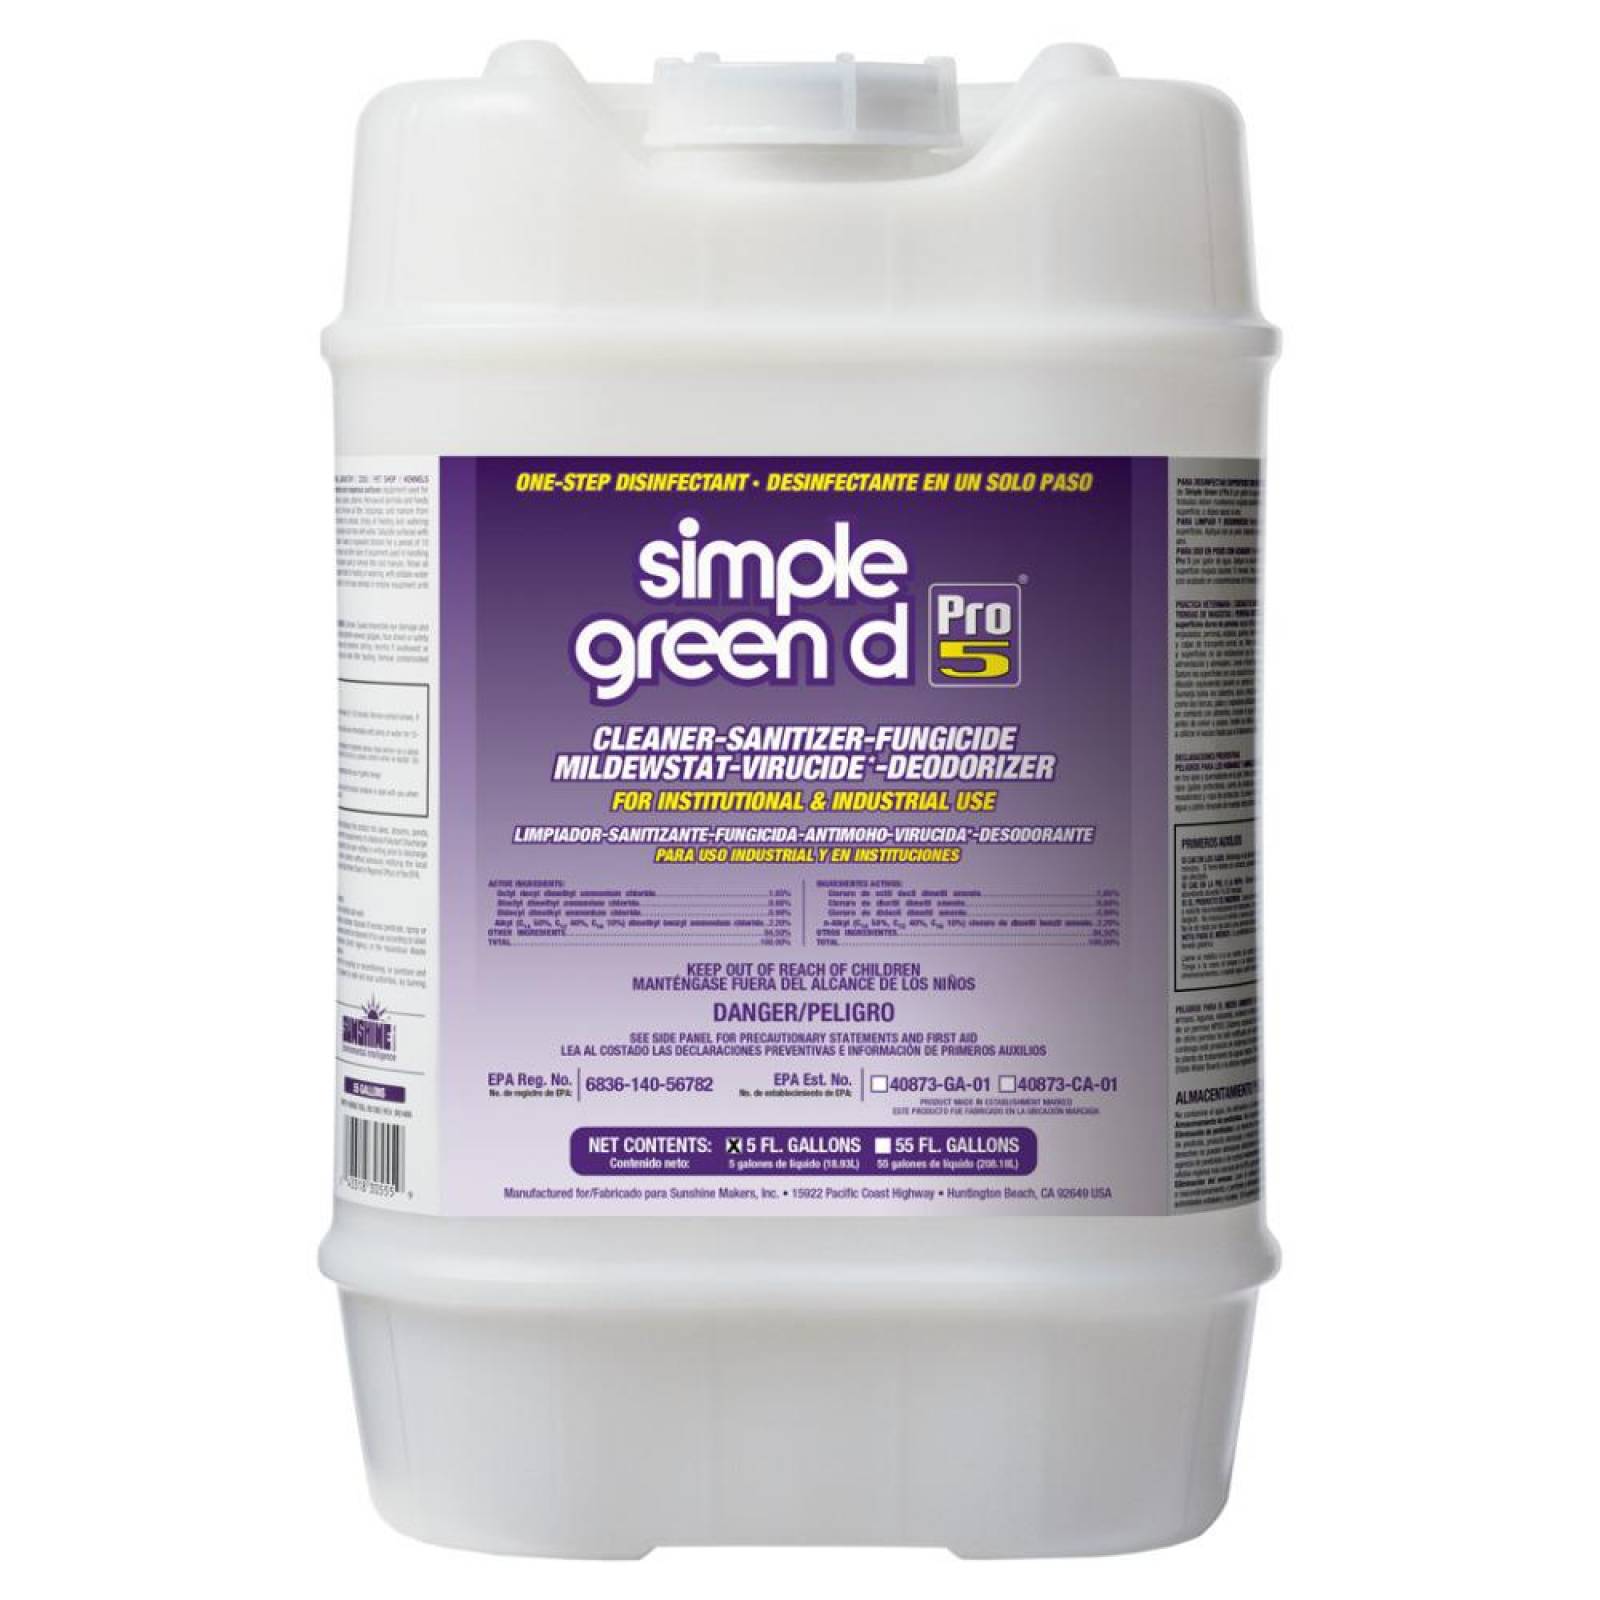 Simple Green D Pro 5 Disinfectant 5 Gallon Pail 